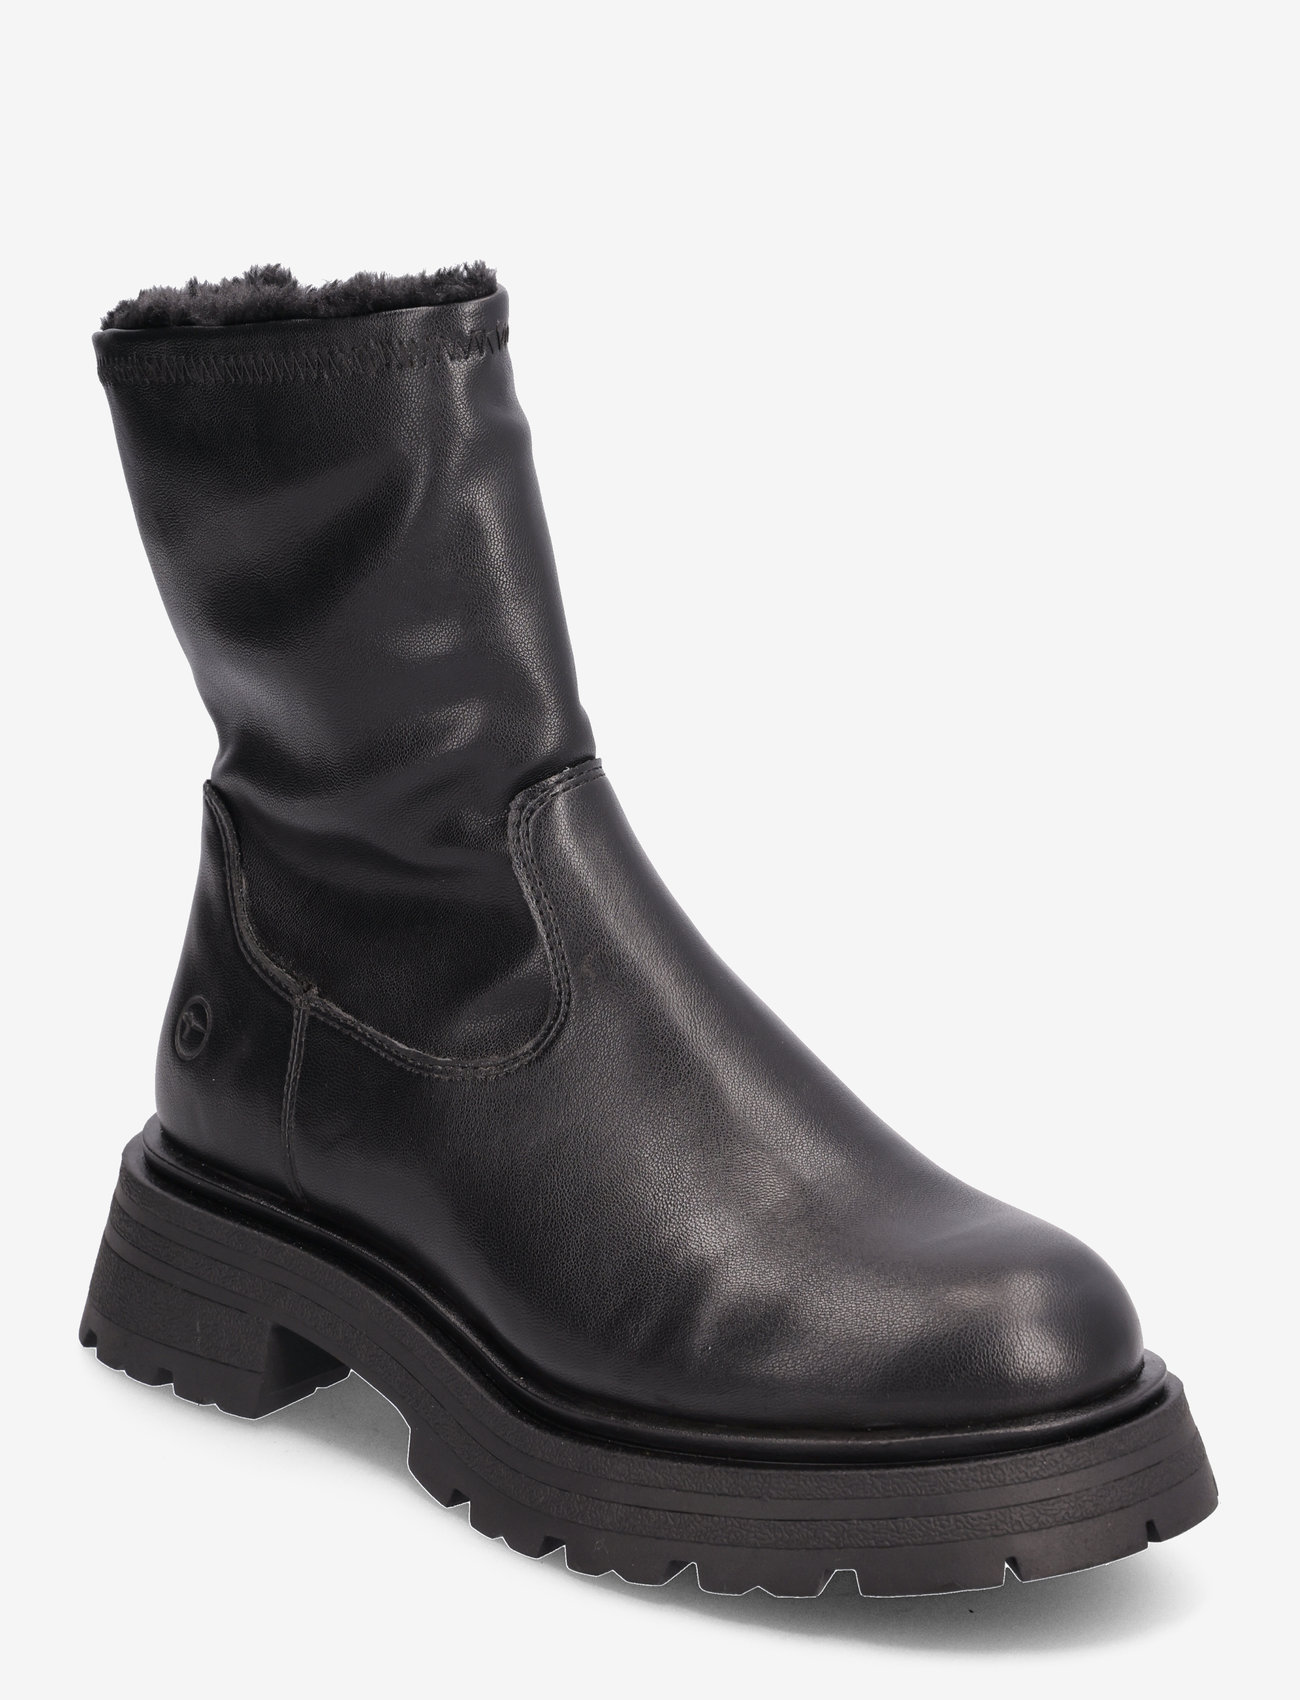 Tamaris - Women Boots - platte enkellaarsjes - black - 0